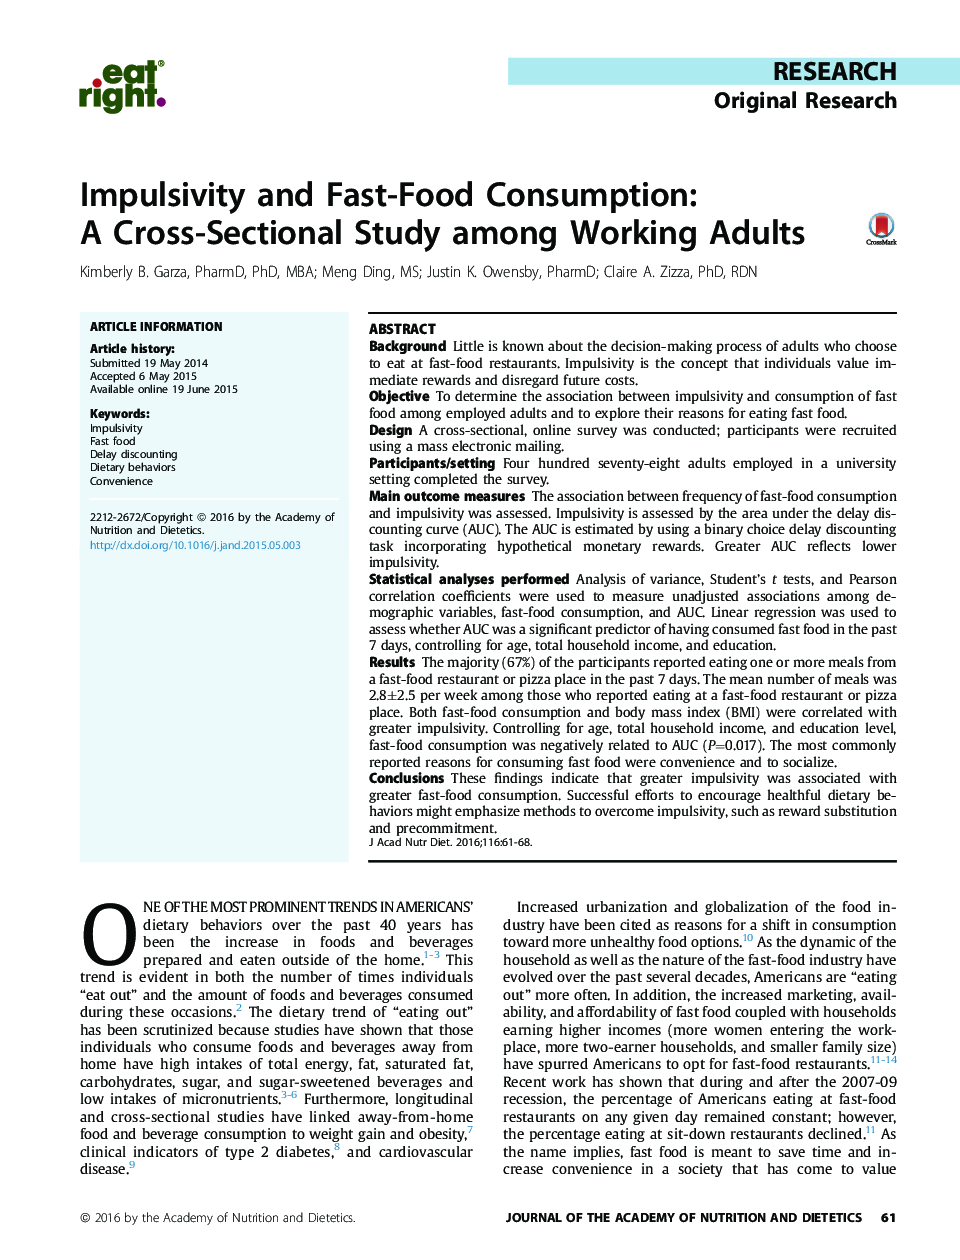 تکانشگری و مصرف فست فود: یک مطالعه مقطعی در میان بزرگسالان شاغل